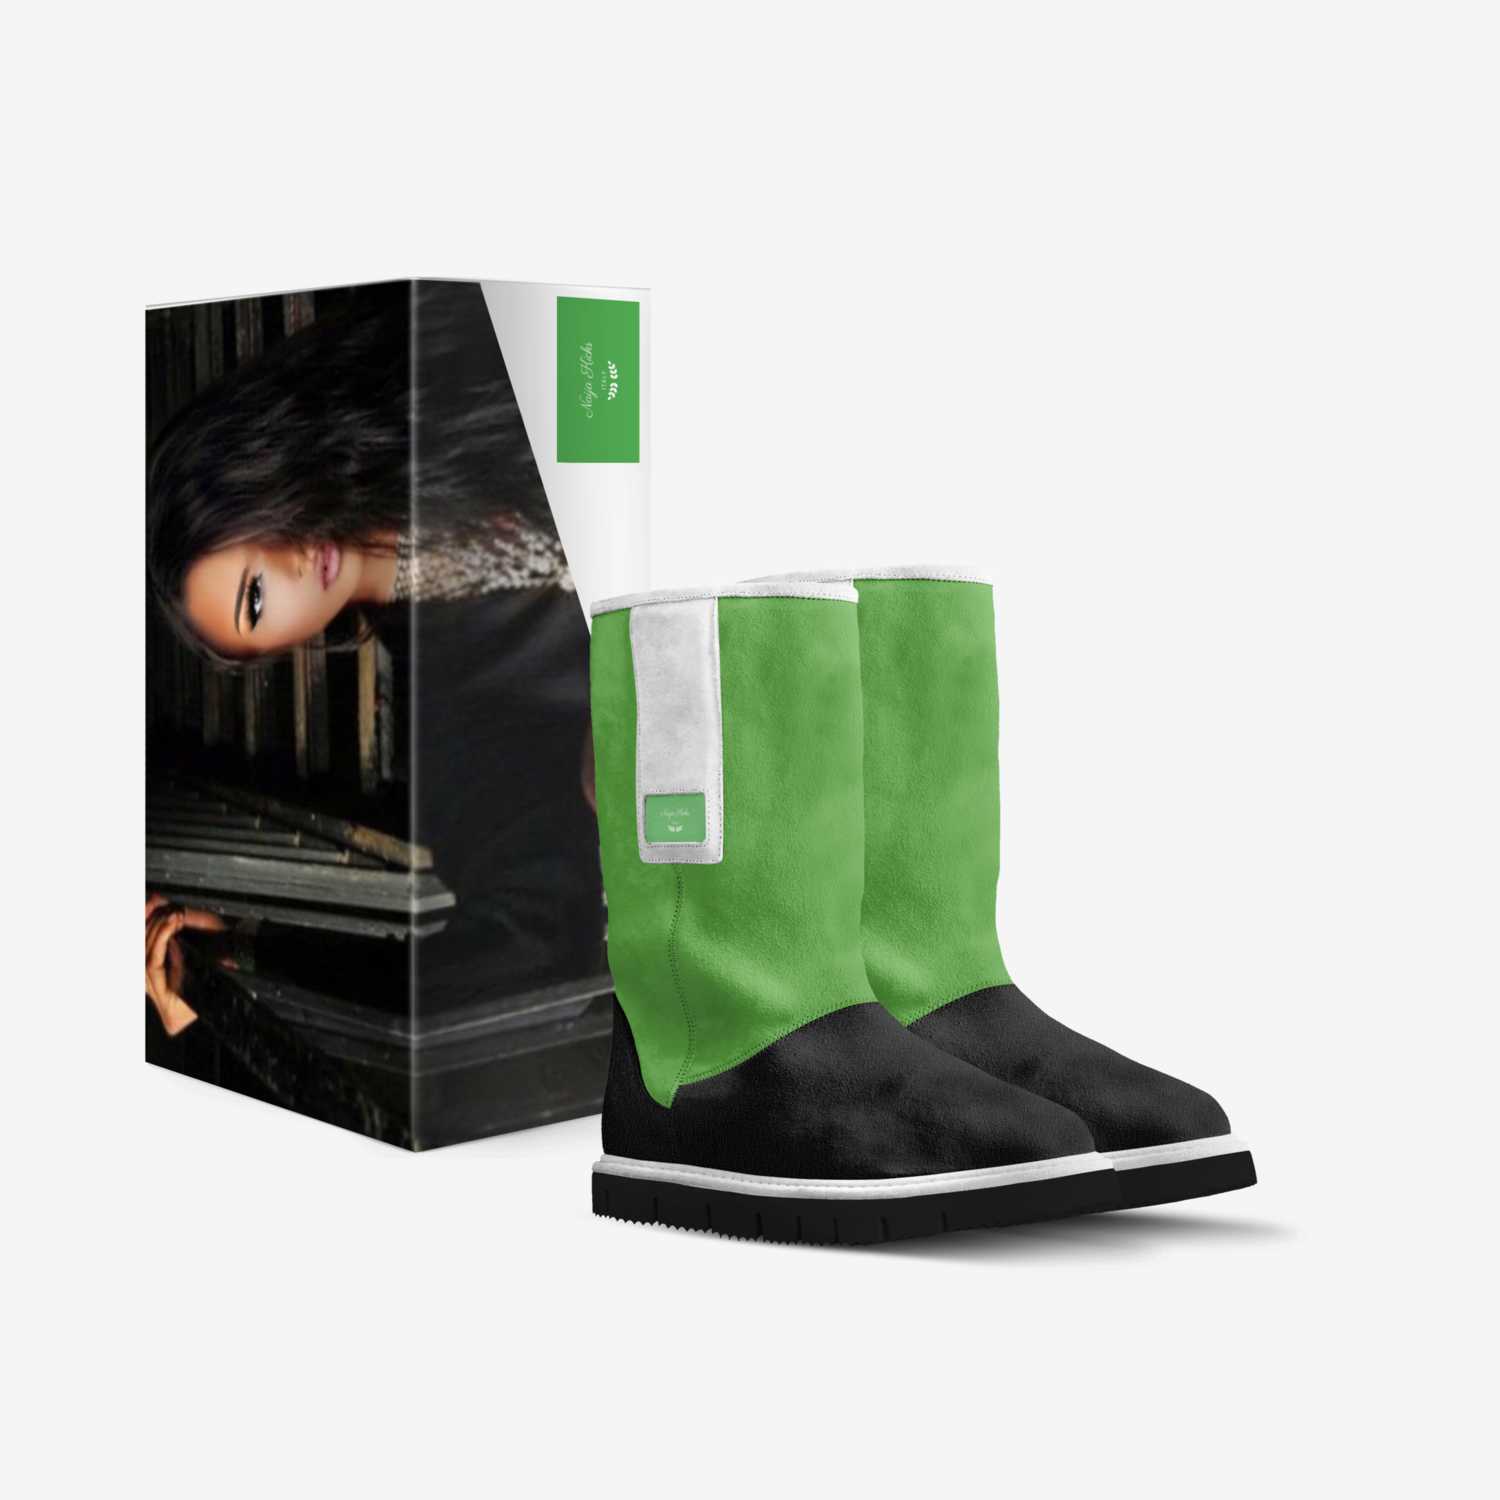 Naija Kicks custom made in Italy shoes by Kendra Aliu | Box view